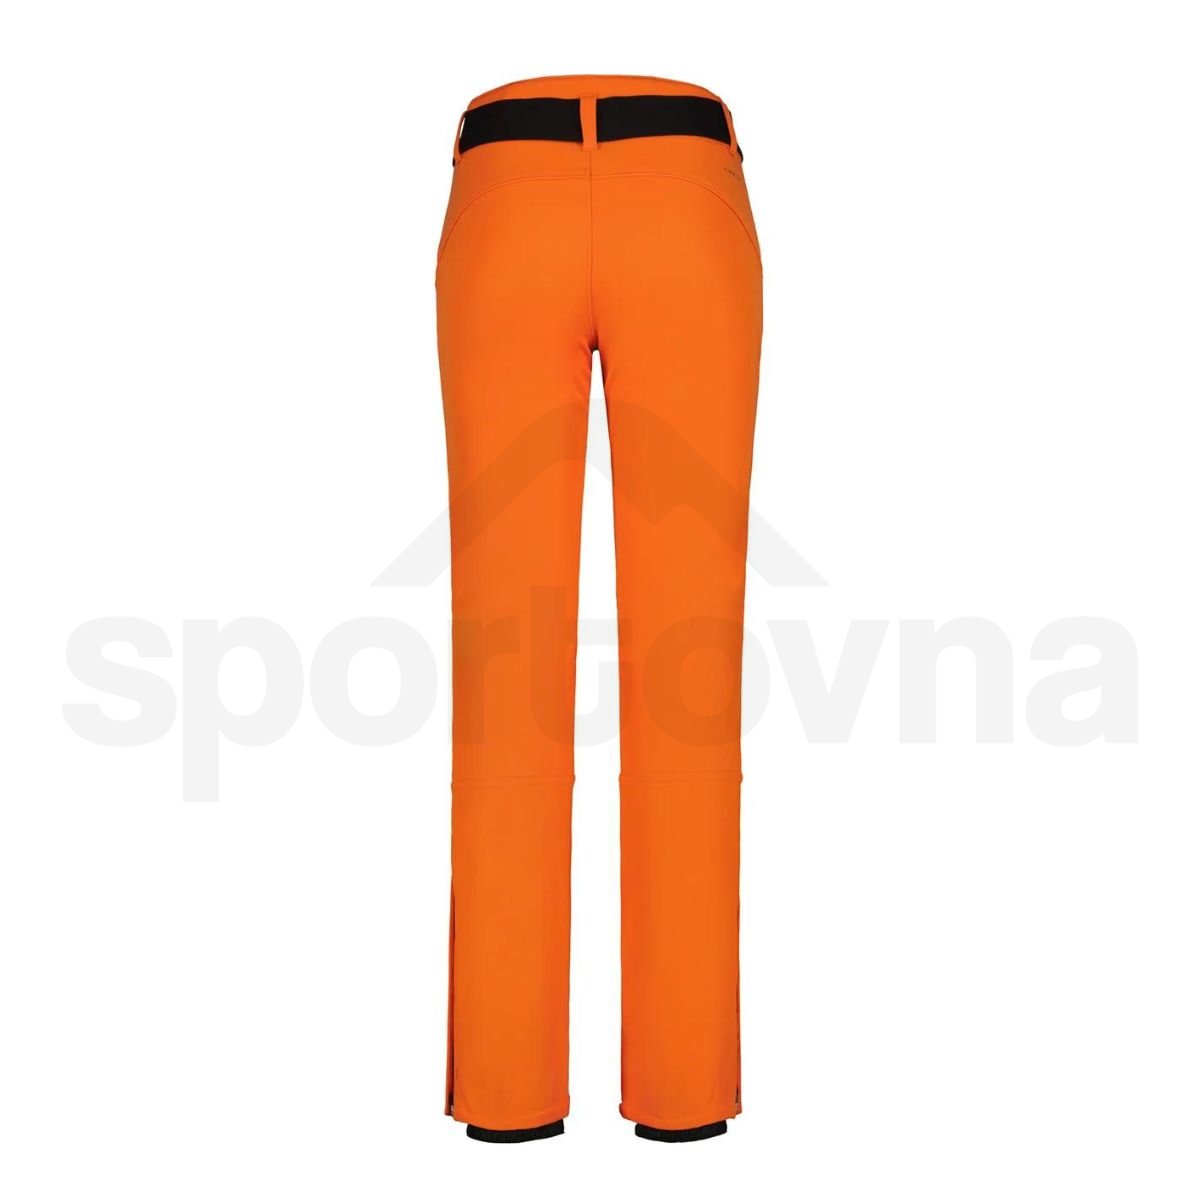 Kalhoty Luhta Joentaus W - oranžová